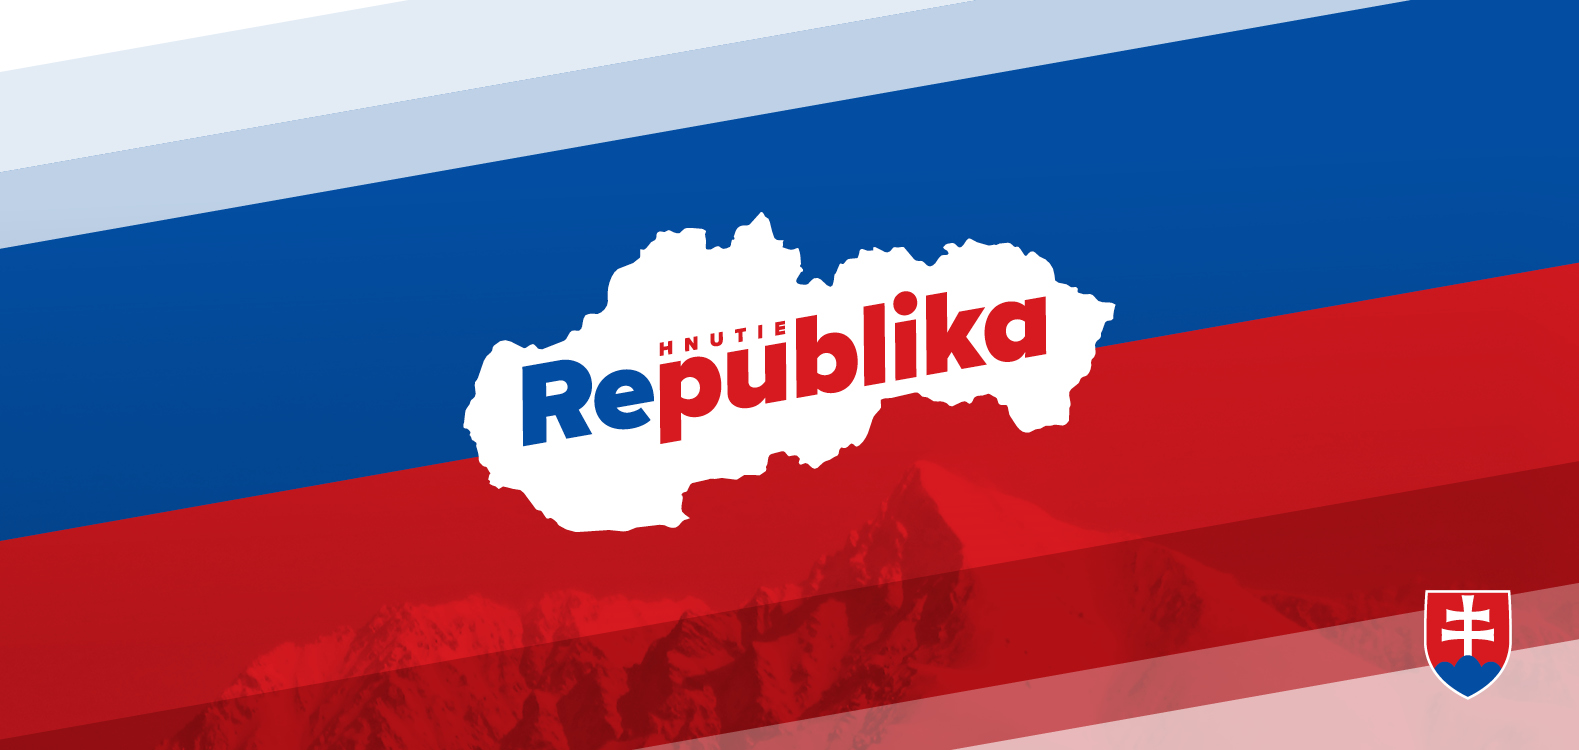 Hnutie REPUBLIKA - logo